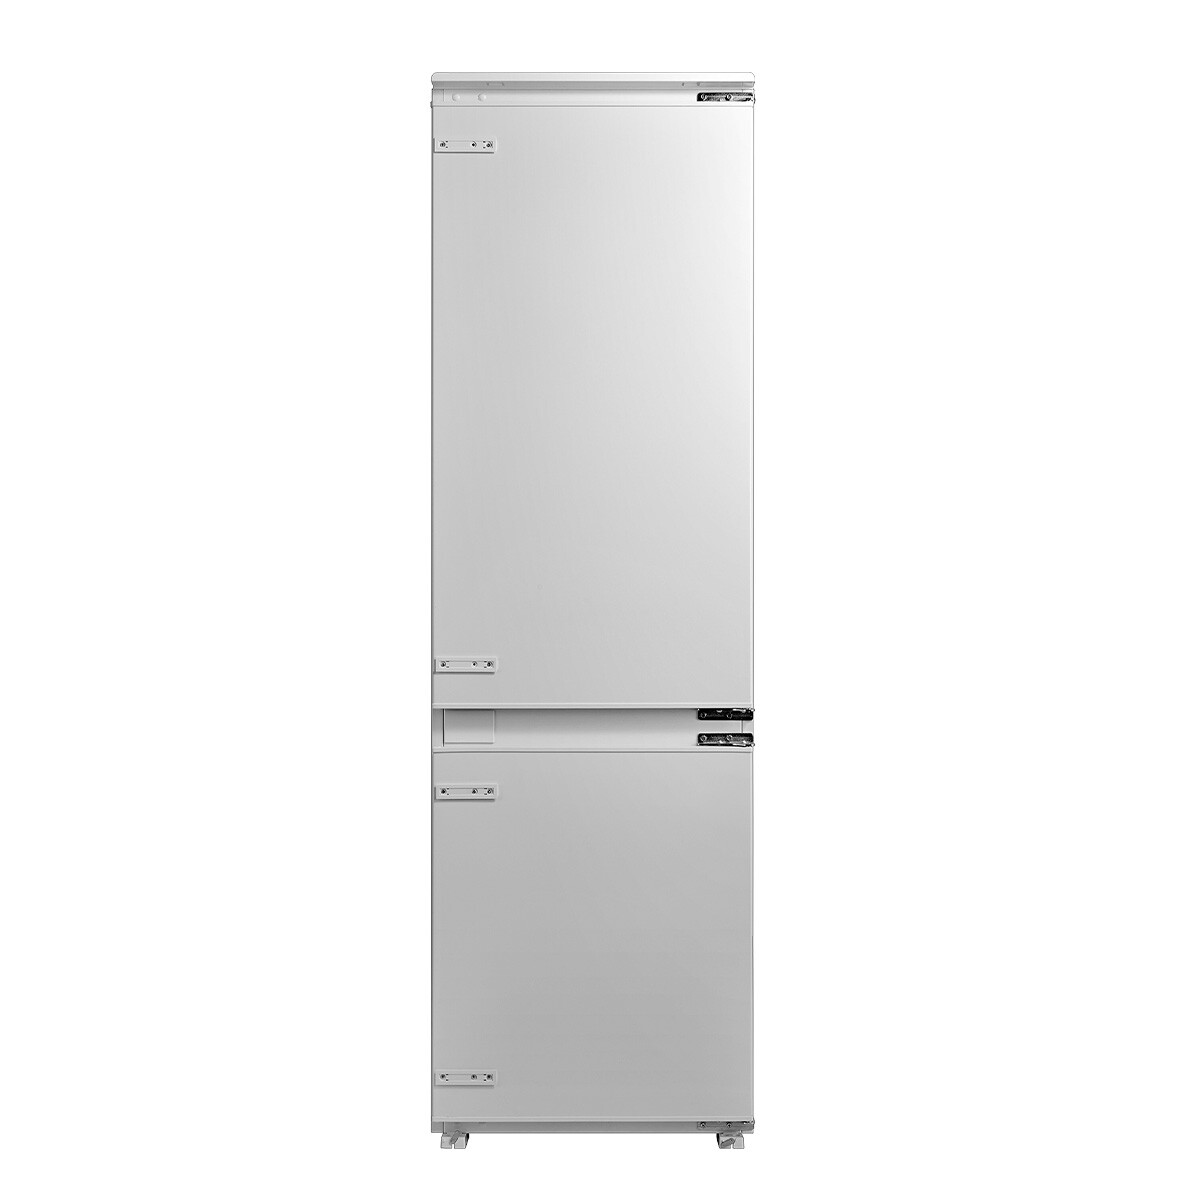 Refrigerador James de Empotrar Modelo Rjc 375 - 001 